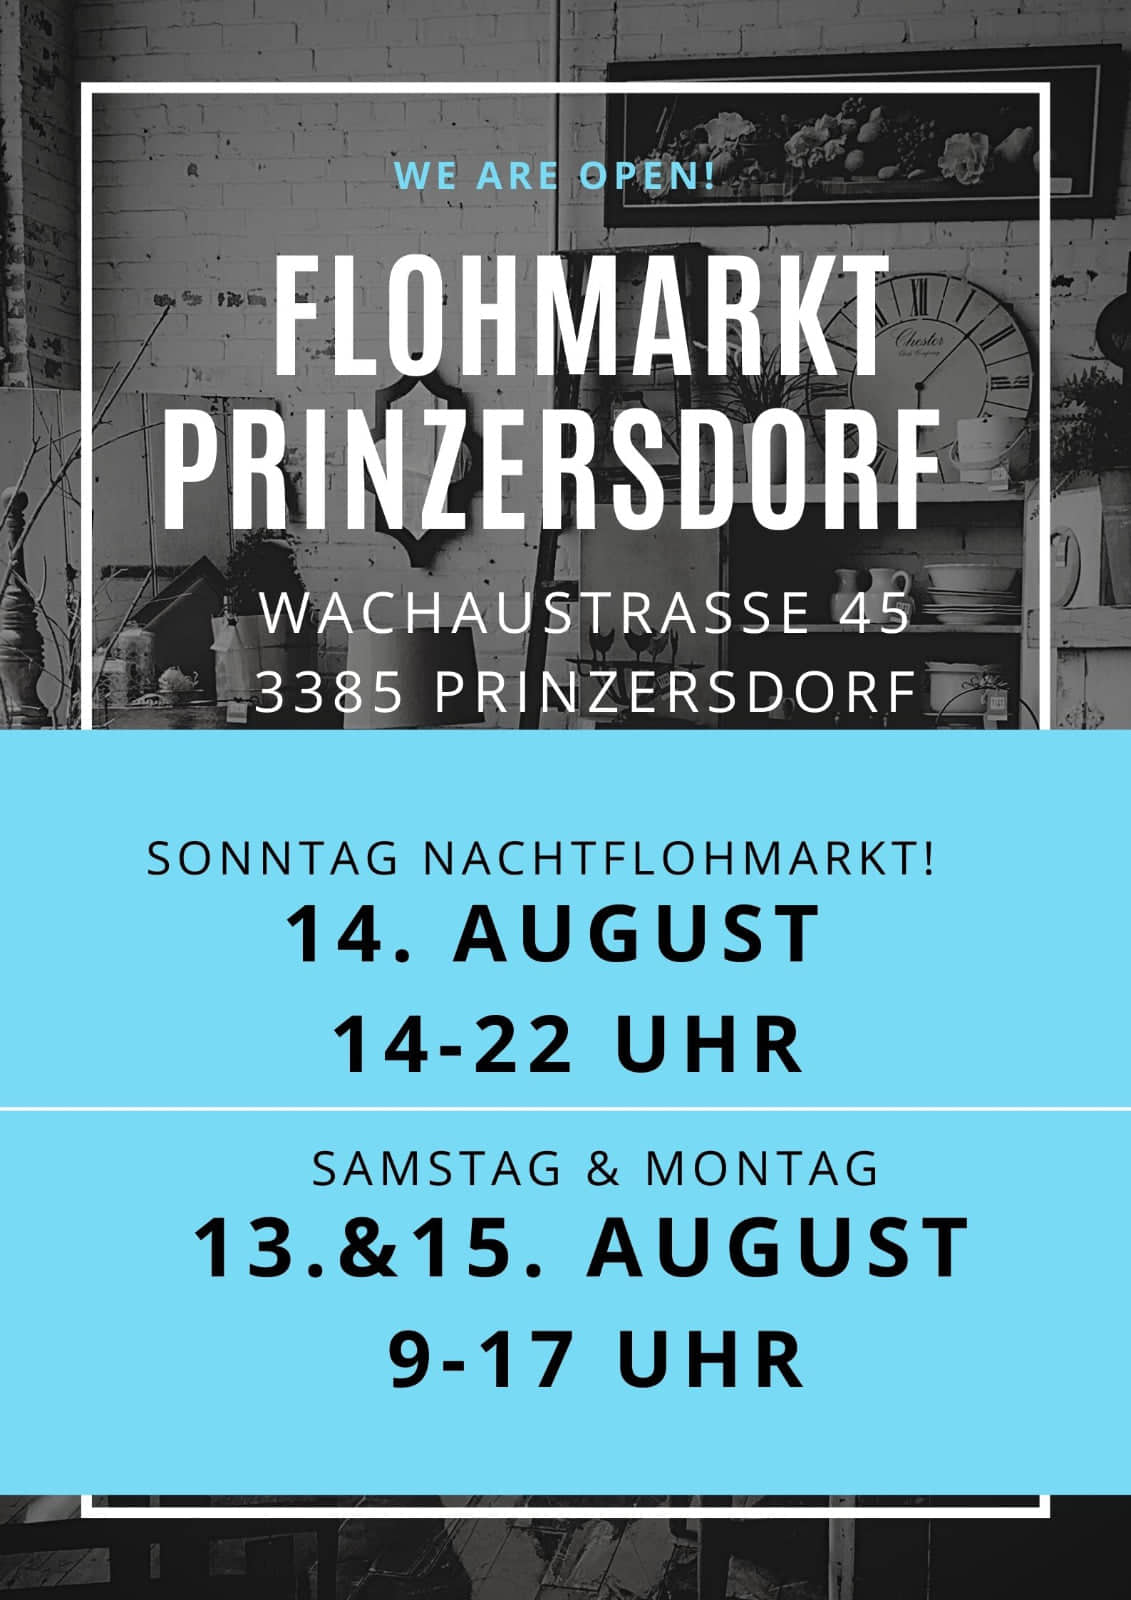 Flohmarkt Prinzersdorf